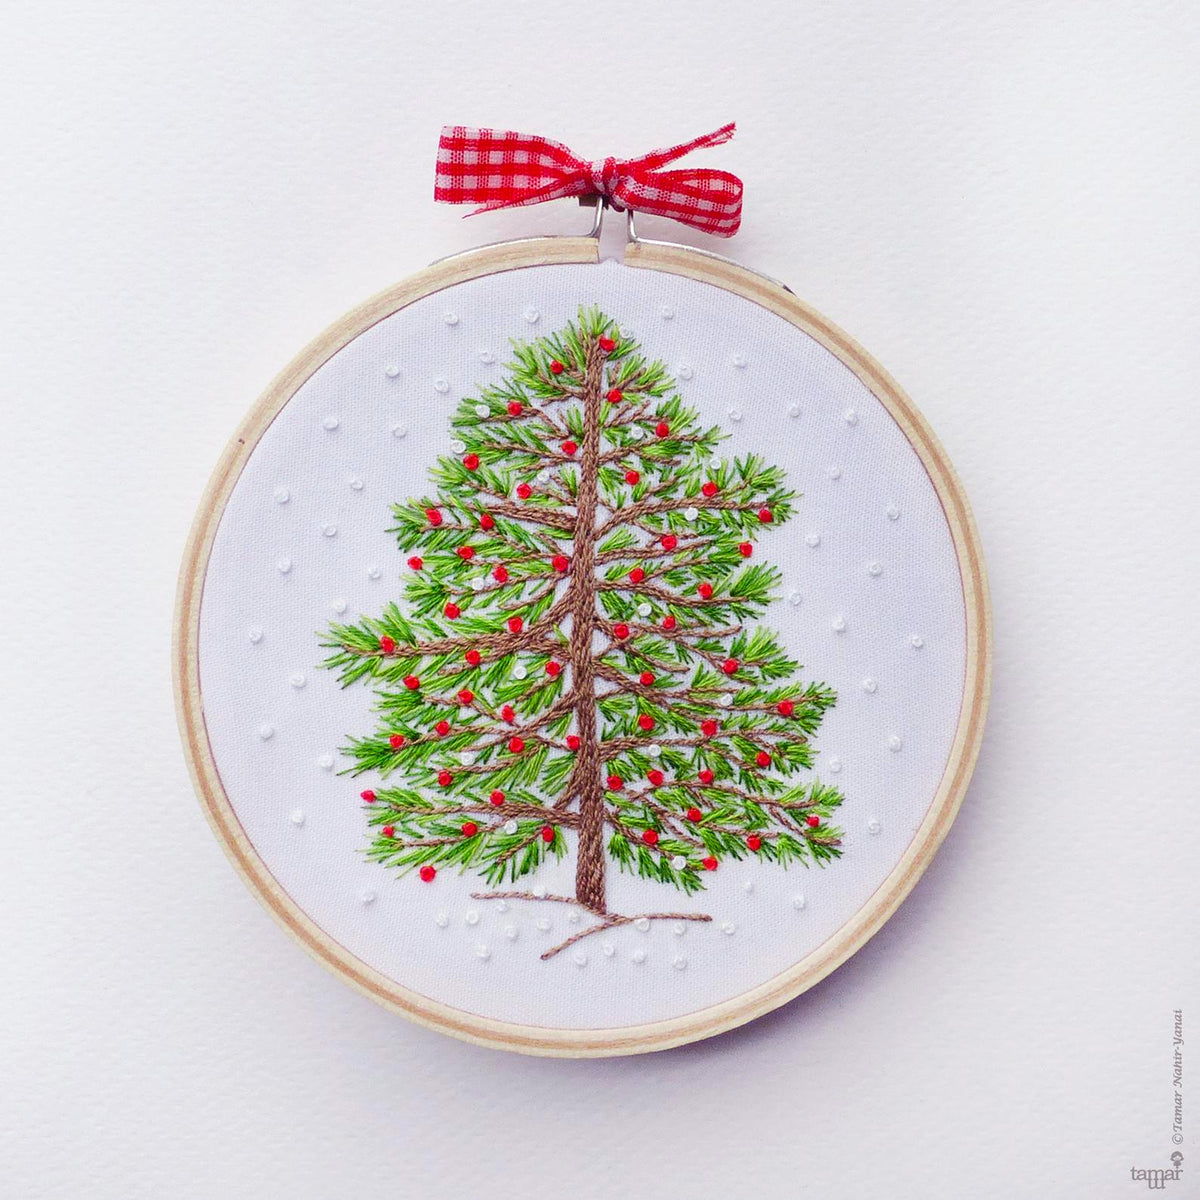 Christmas Embroidery Kit for Adults, Christmas DIY Craft Kit, Holiday Decor  Christmas, Modern Embroidery Kit Cross Stitch,christmas Ornament 